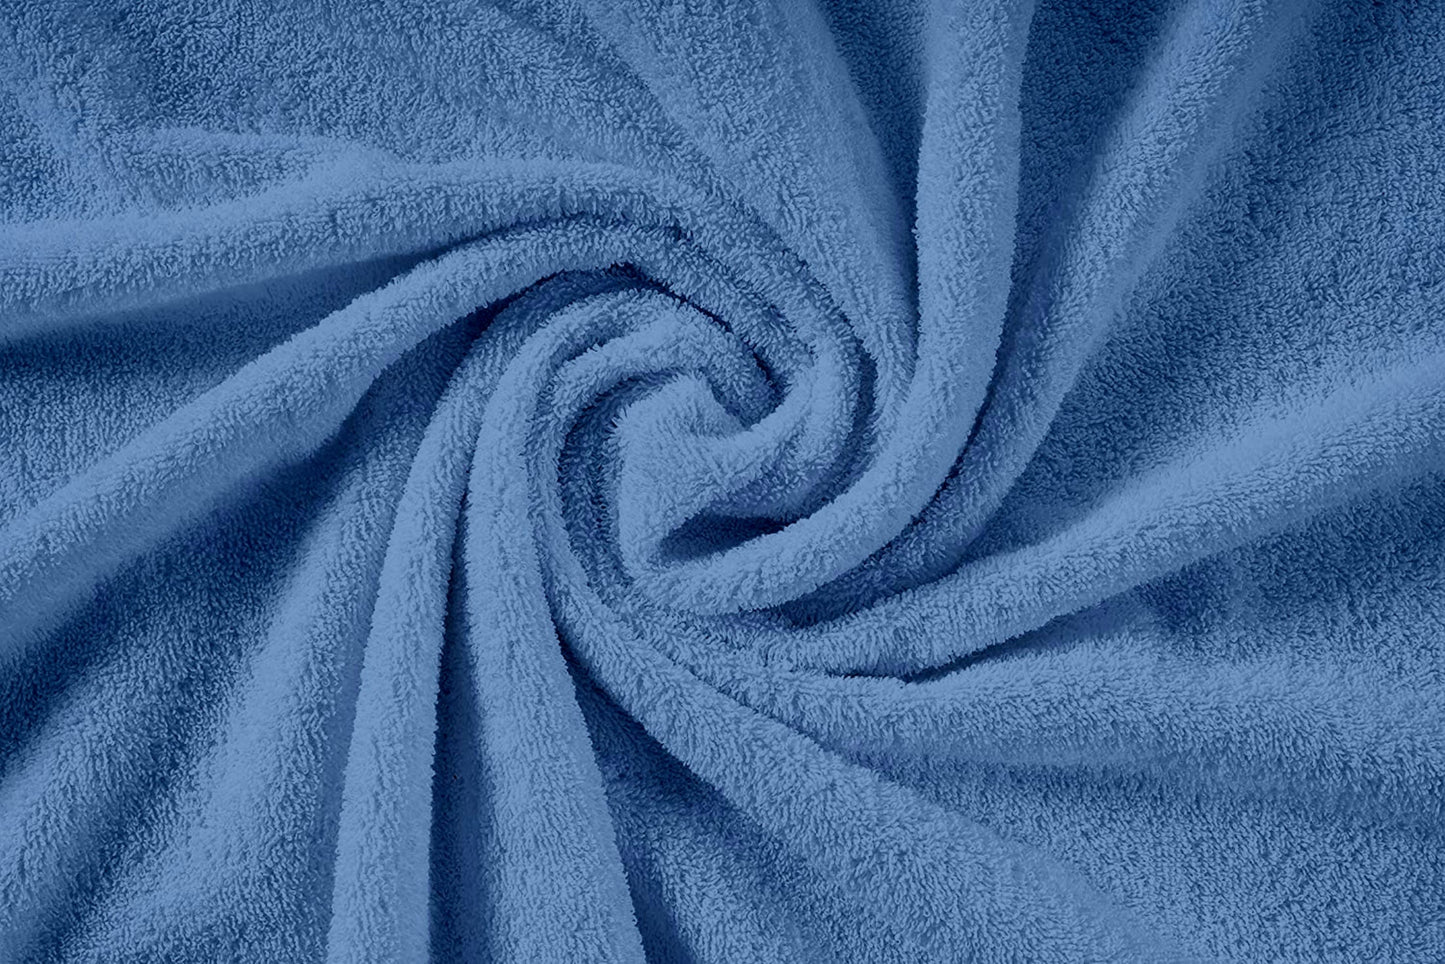 3 Piece 100% Cotton Towel Set 550GSM - Blue Allure